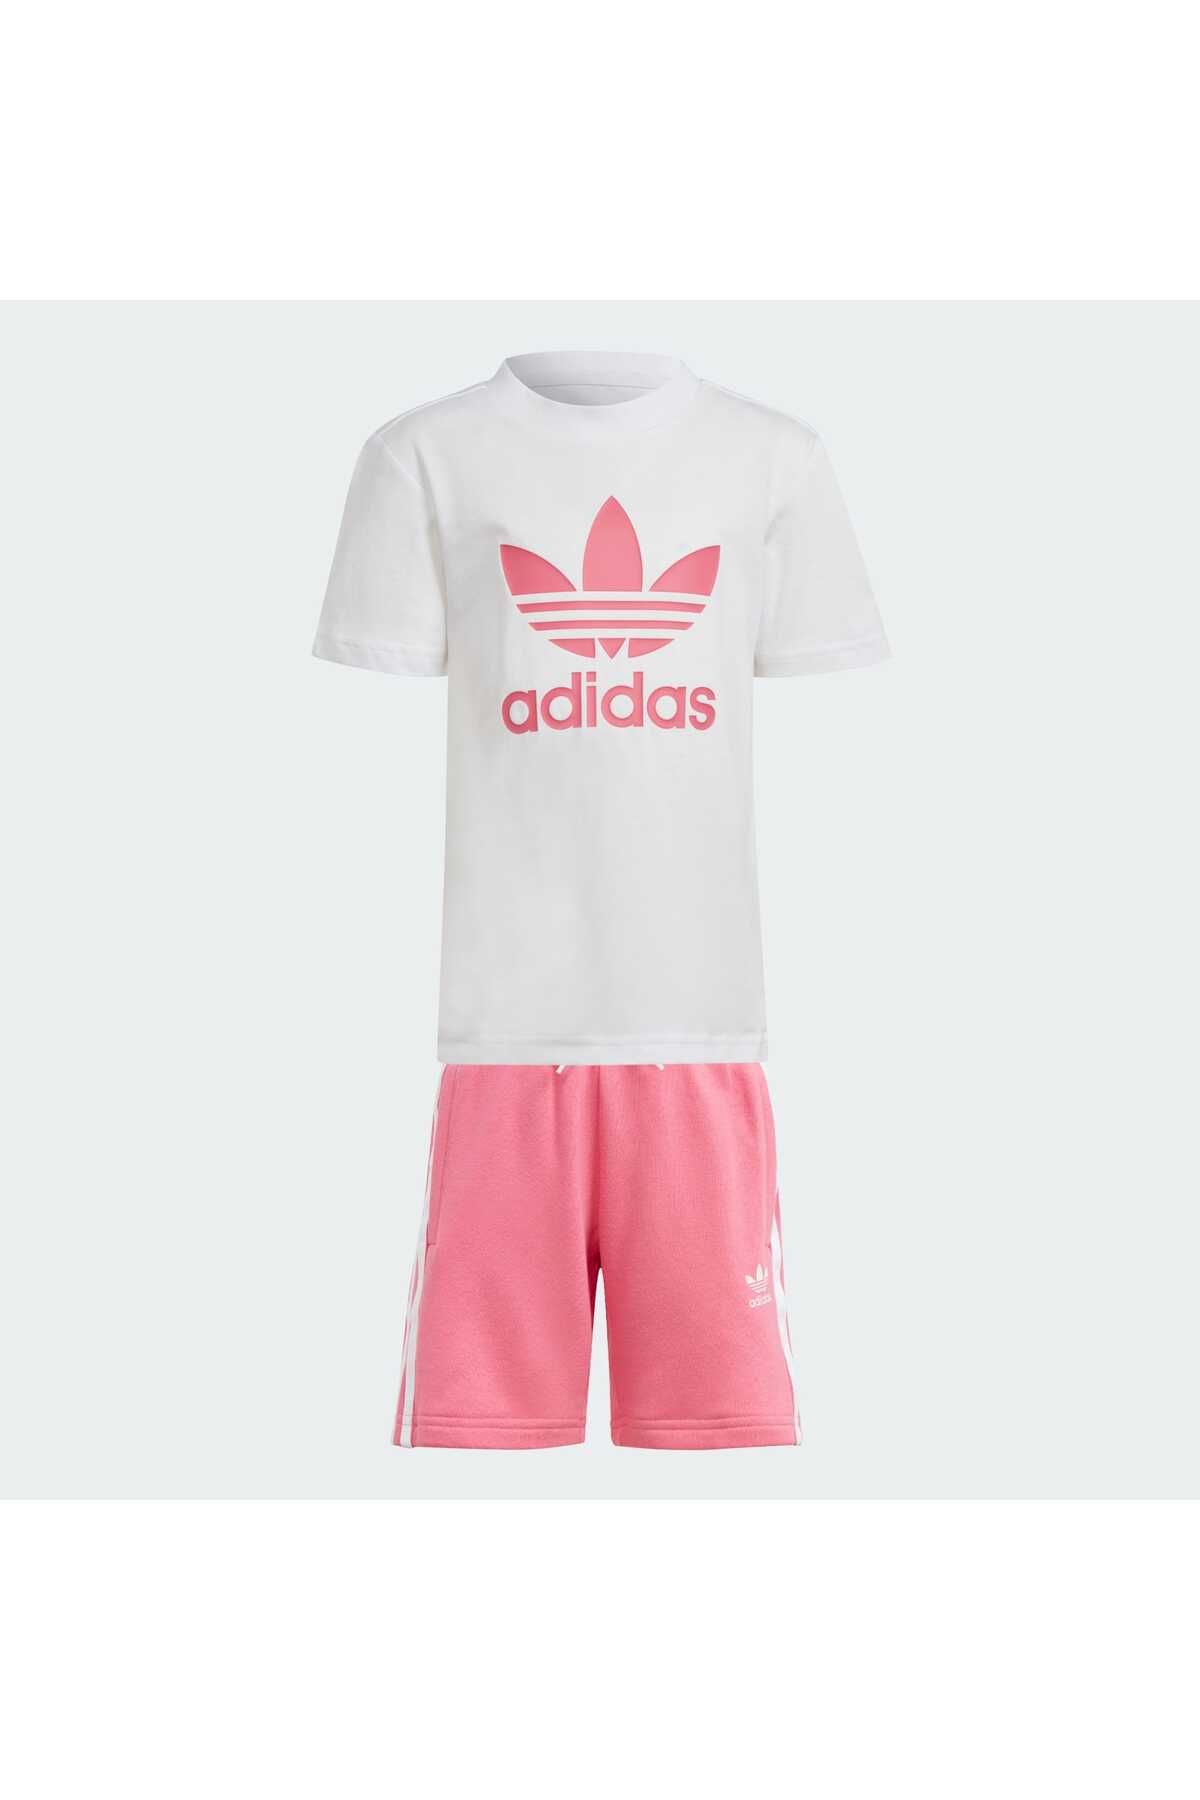 adidas Adicolor Unisex Çocuk Şort Ve Tişört Takımı Ir6932